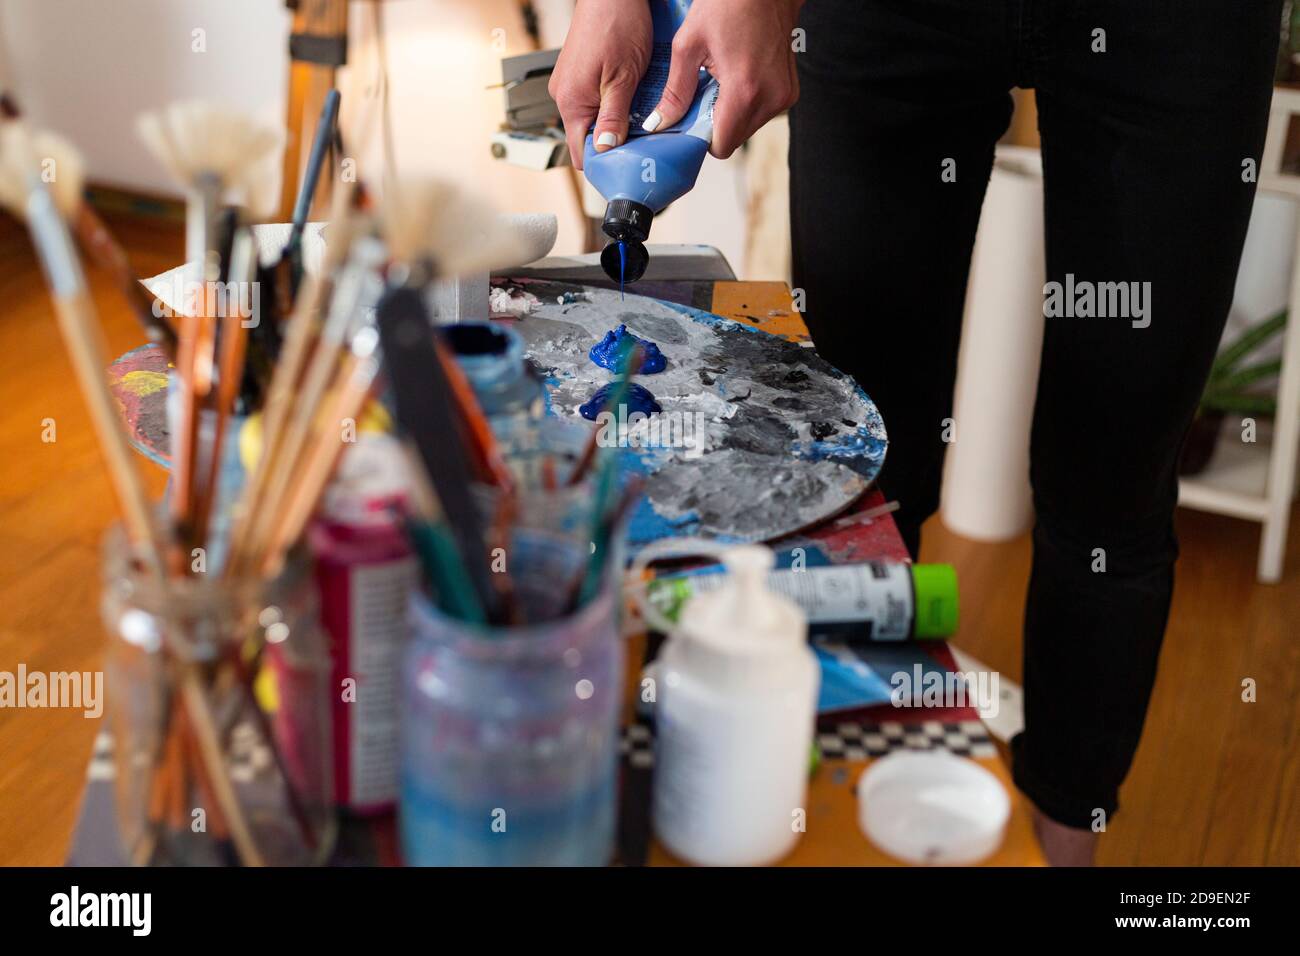 Gros plan de la main du peintre extrudant de la couleur sur une palette dans son studio. Autour de la palette se trouvent une multitude de pinceaux pour peindre en pots. Banque D'Images